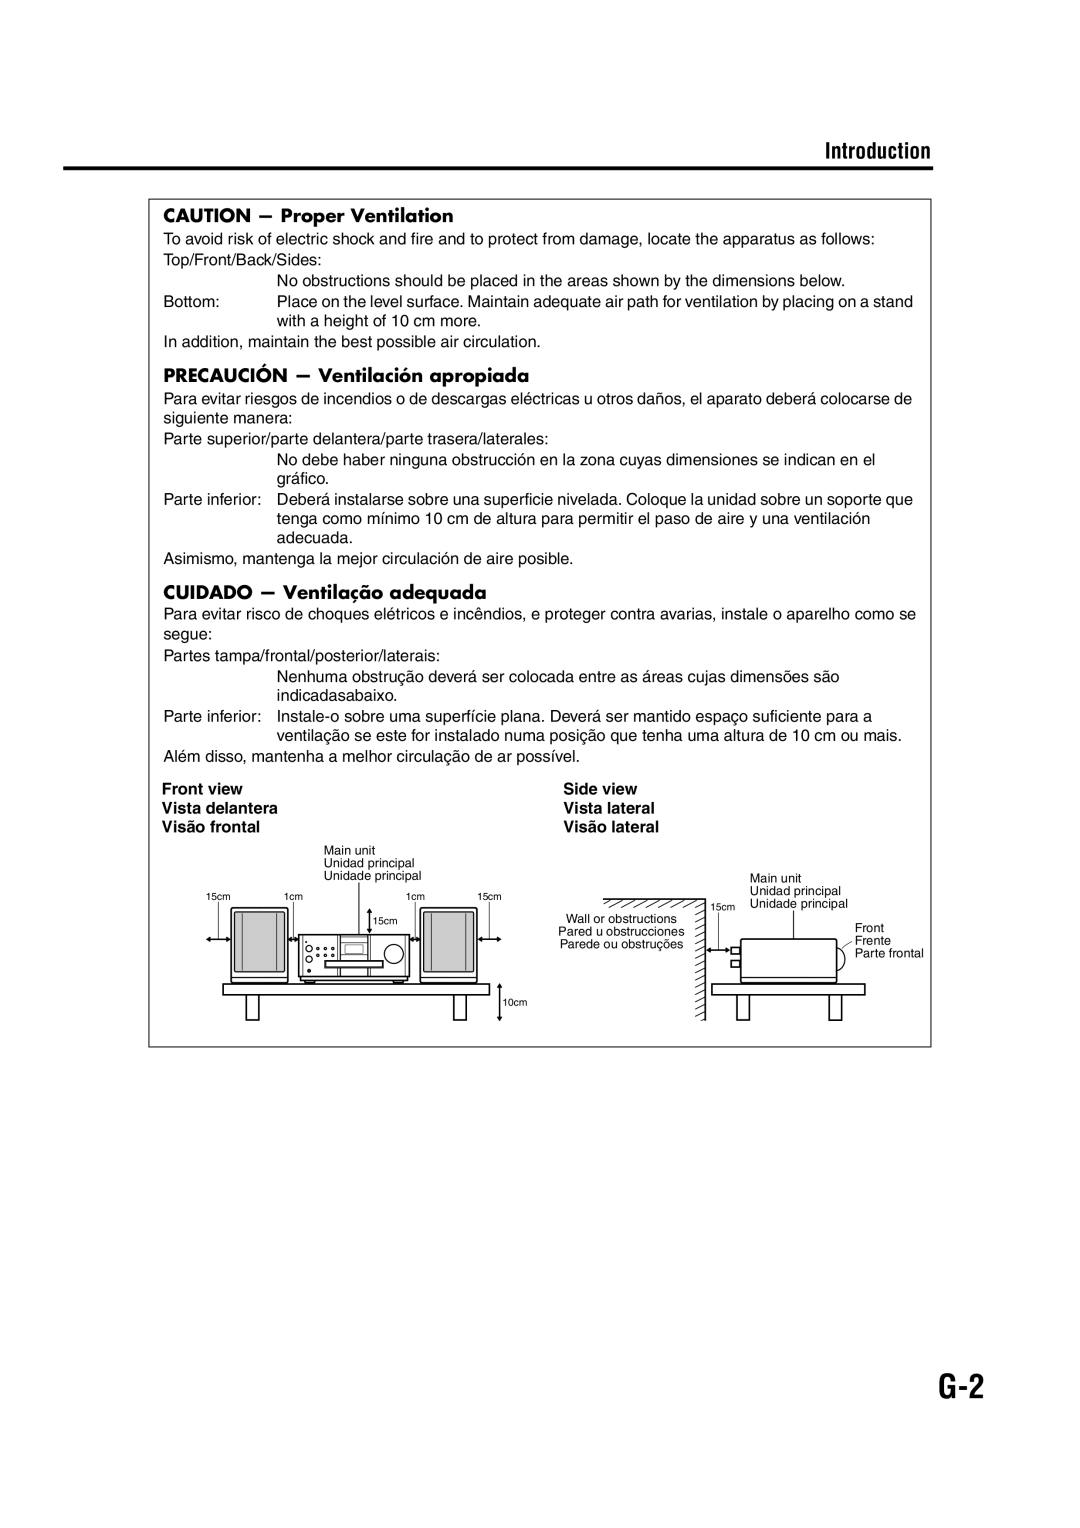 JVC EX-A1 CAUTION — Proper Ventilation, PRECAUCIÓN — Ventilación apropiada, CUIDADO — Ventilação adequada, Introduction 